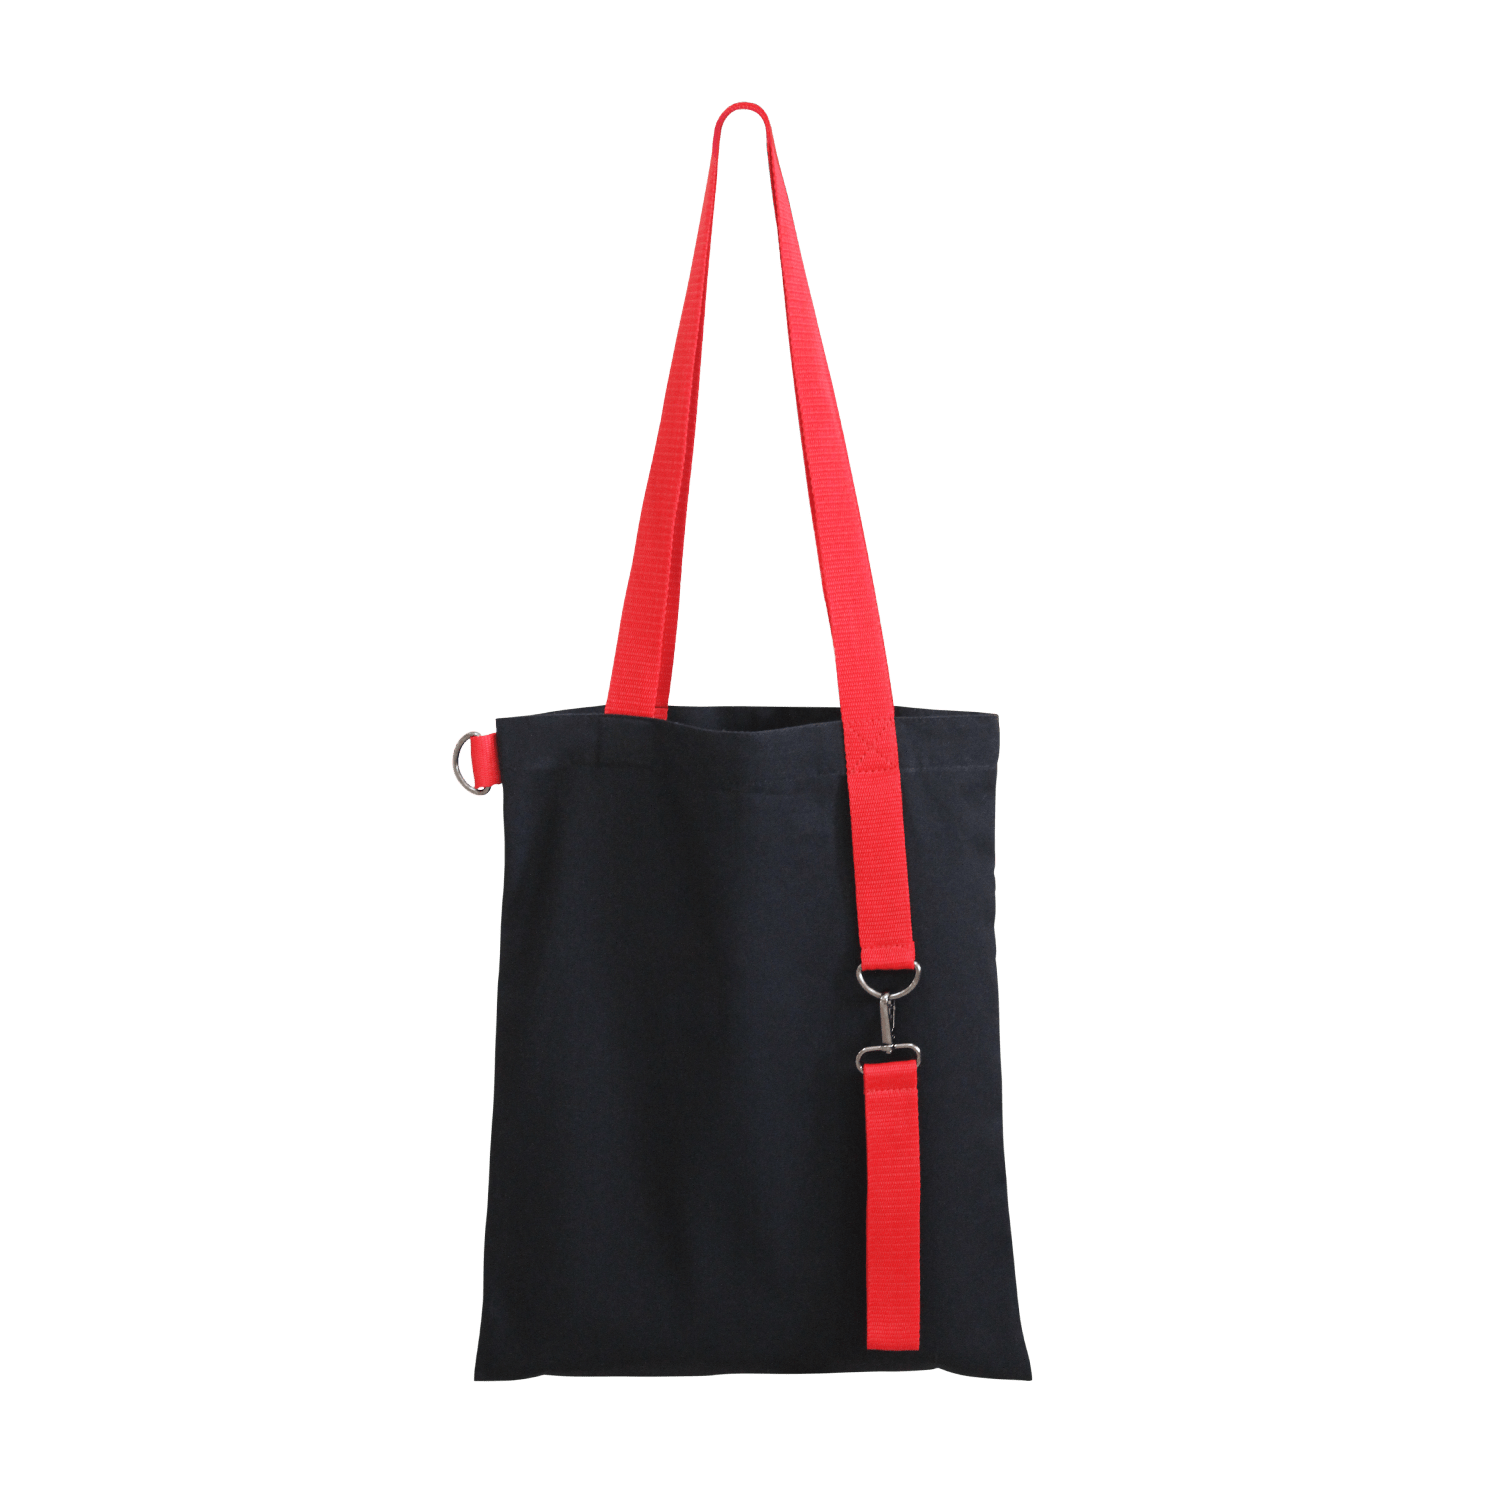 Шоппер Superbag black с ремувкой 4sb, чёрный с оранжевым